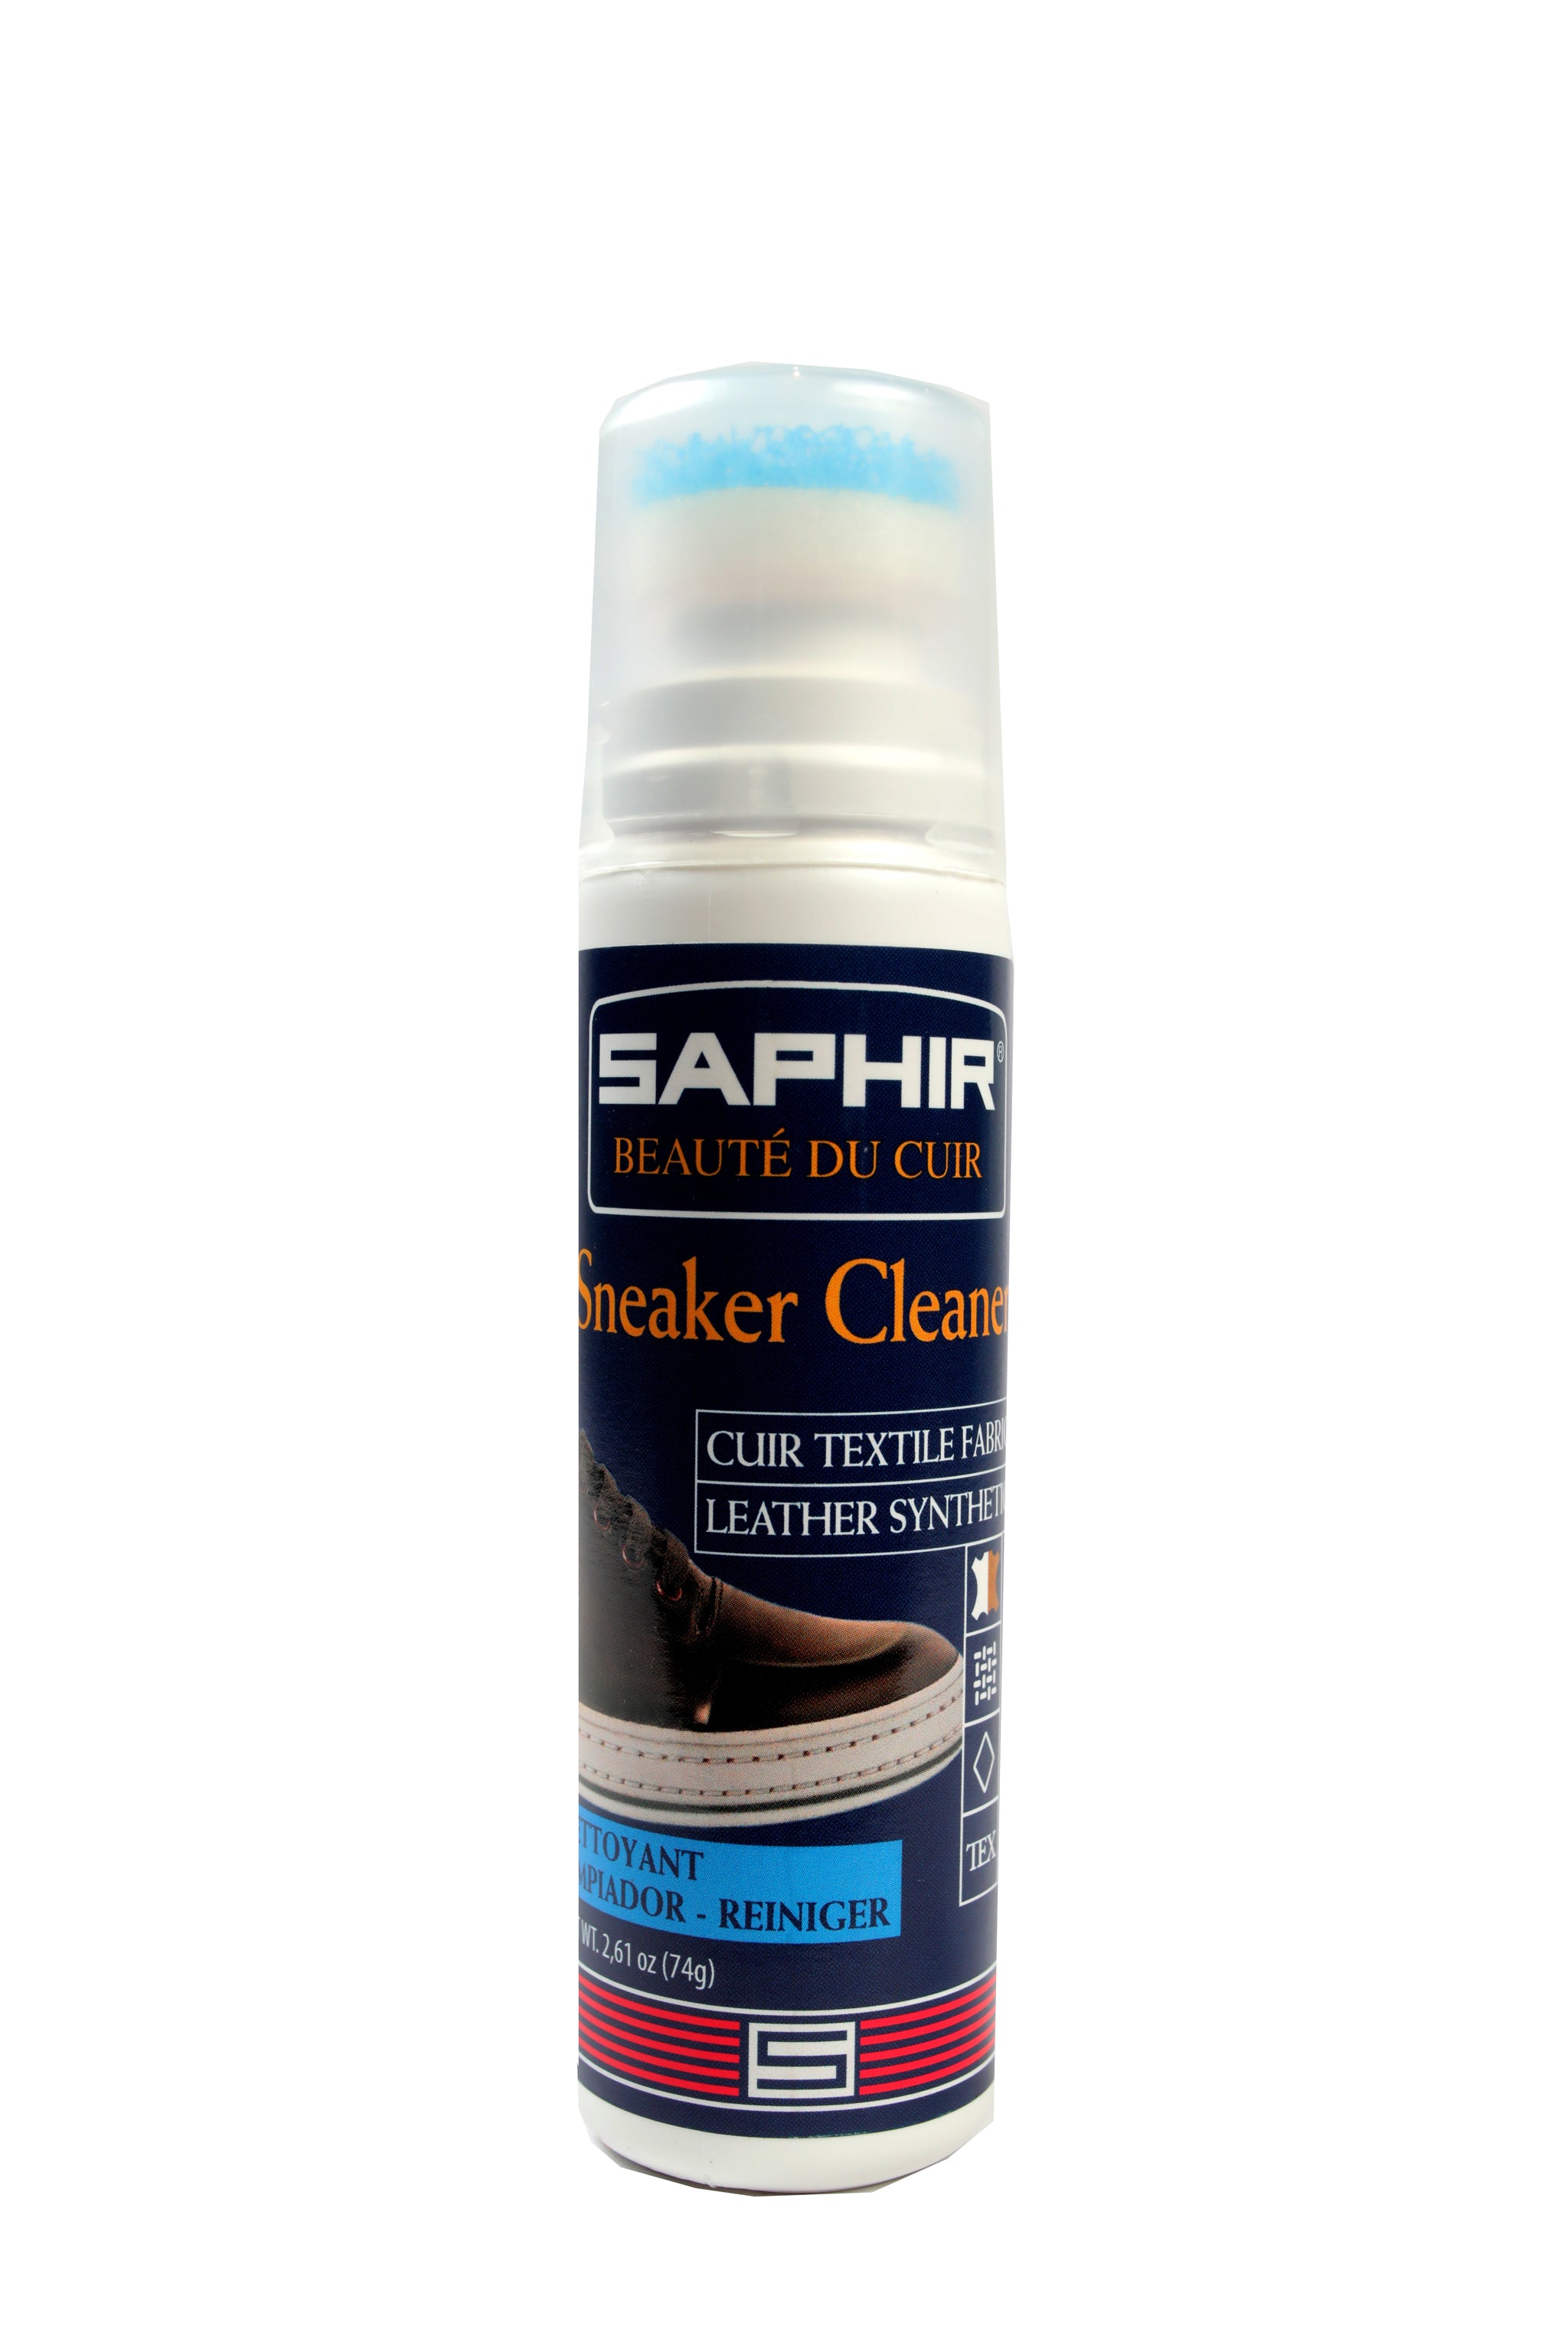 Saphir Sneaker Cleaner (Natural) 75 ML